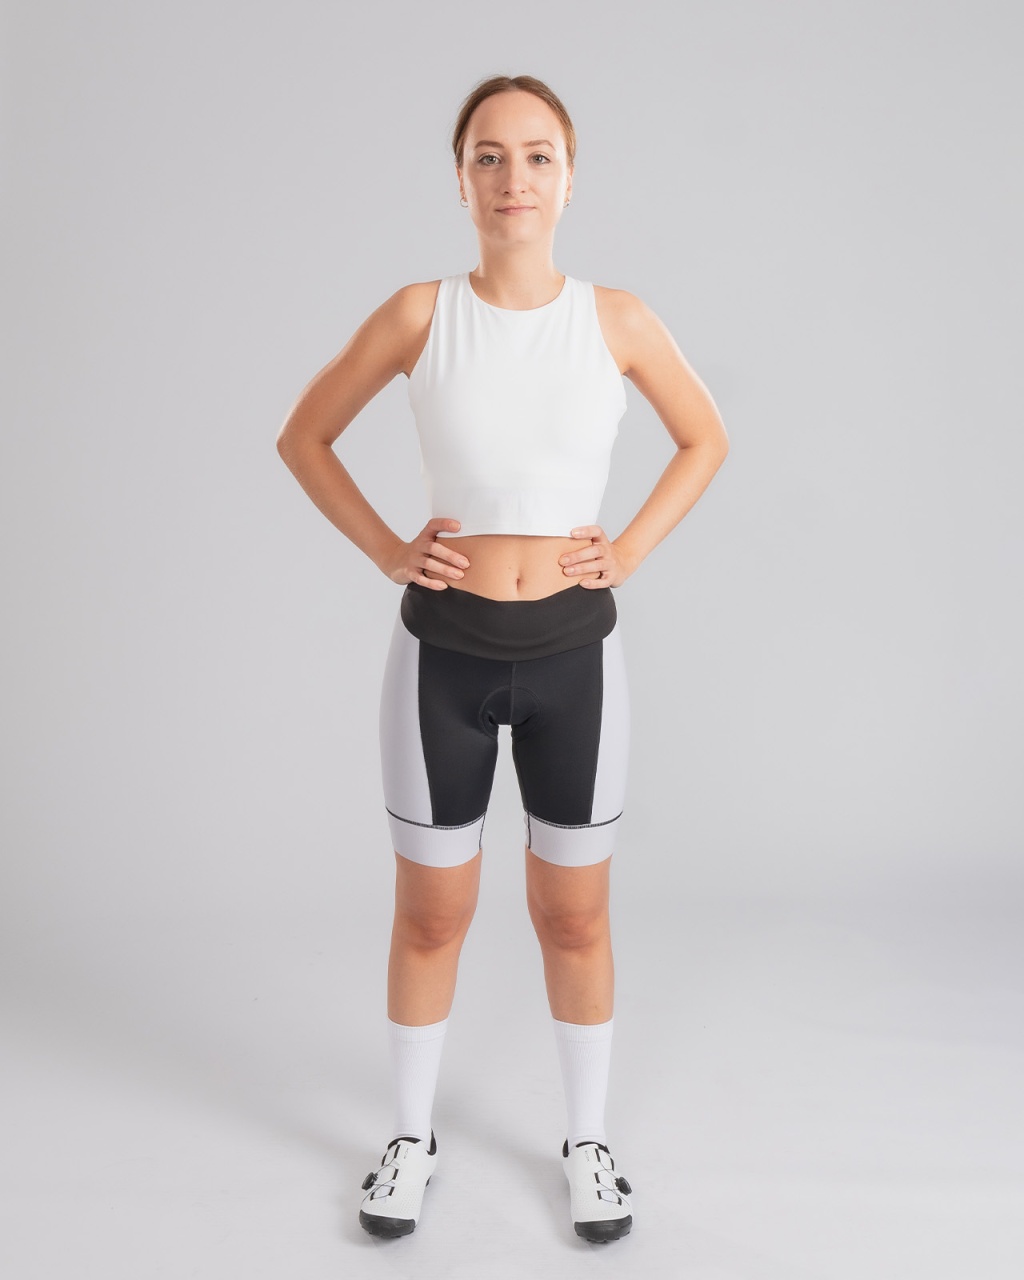 Women's cycling shorts pro